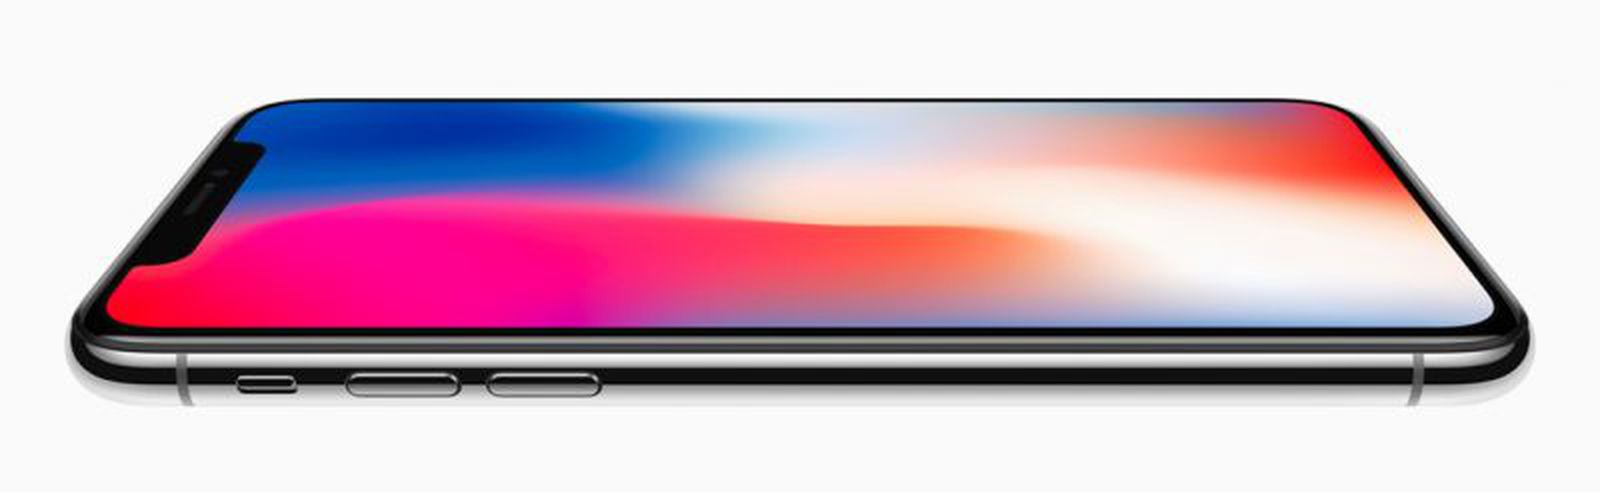 Super Retina 5.8 pouces Apple iPhone X In-CELL Vitre PREMIUM SmartPhone  Affichage True Tone Changer Écran LCD LG HDR Oléophobe